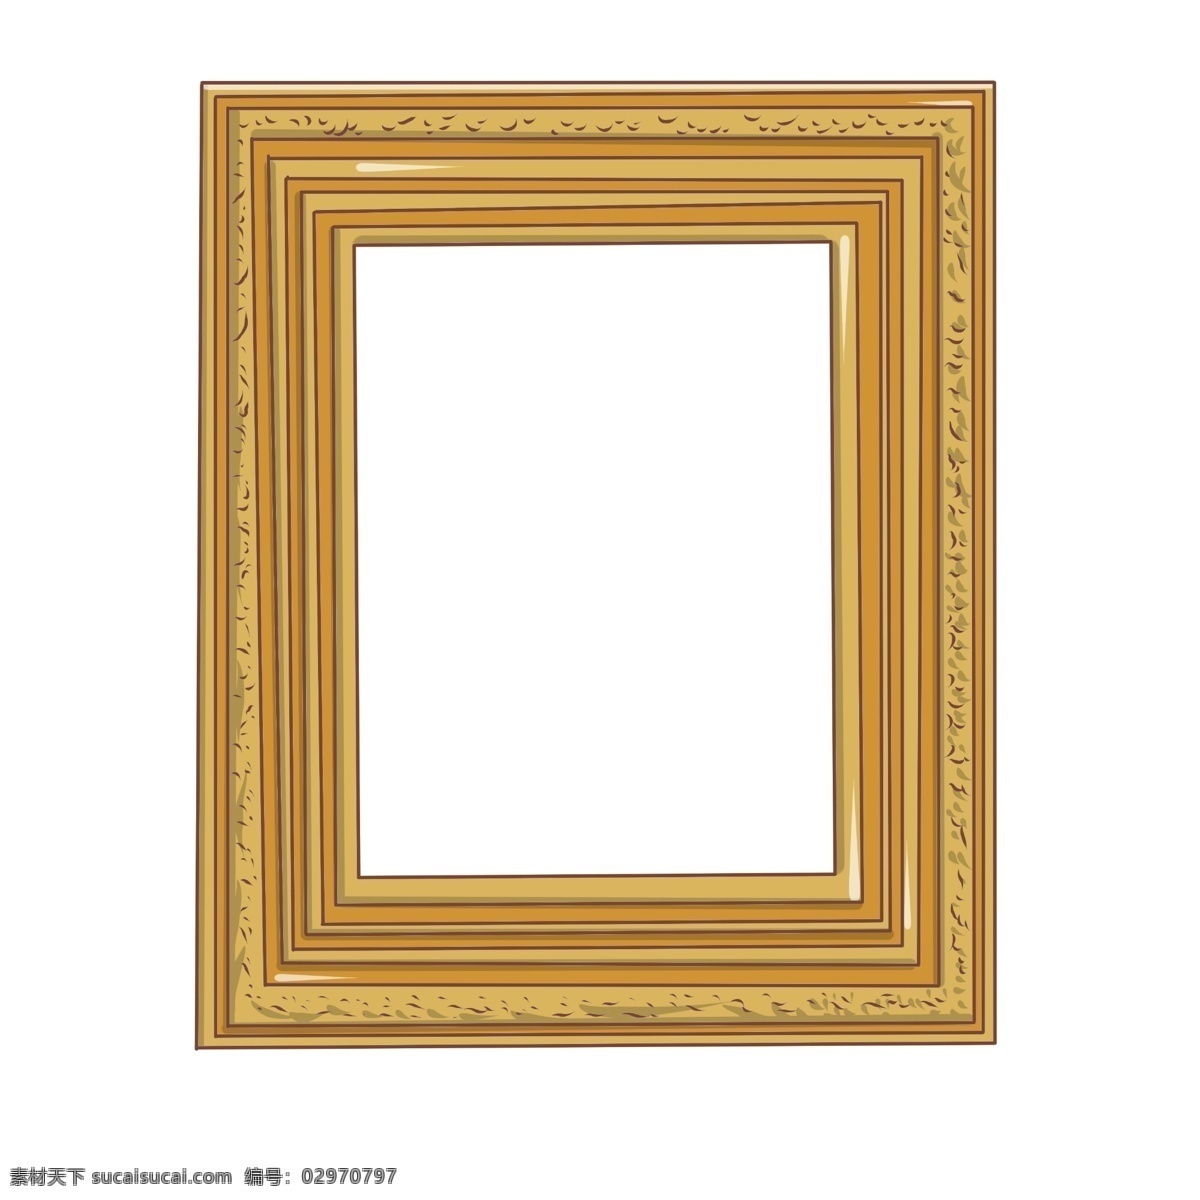 长方形 相框 手绘 插画 长方形相框 金色的相框 漂亮的相框 精美相框 立体相框 相框装饰 相框边框